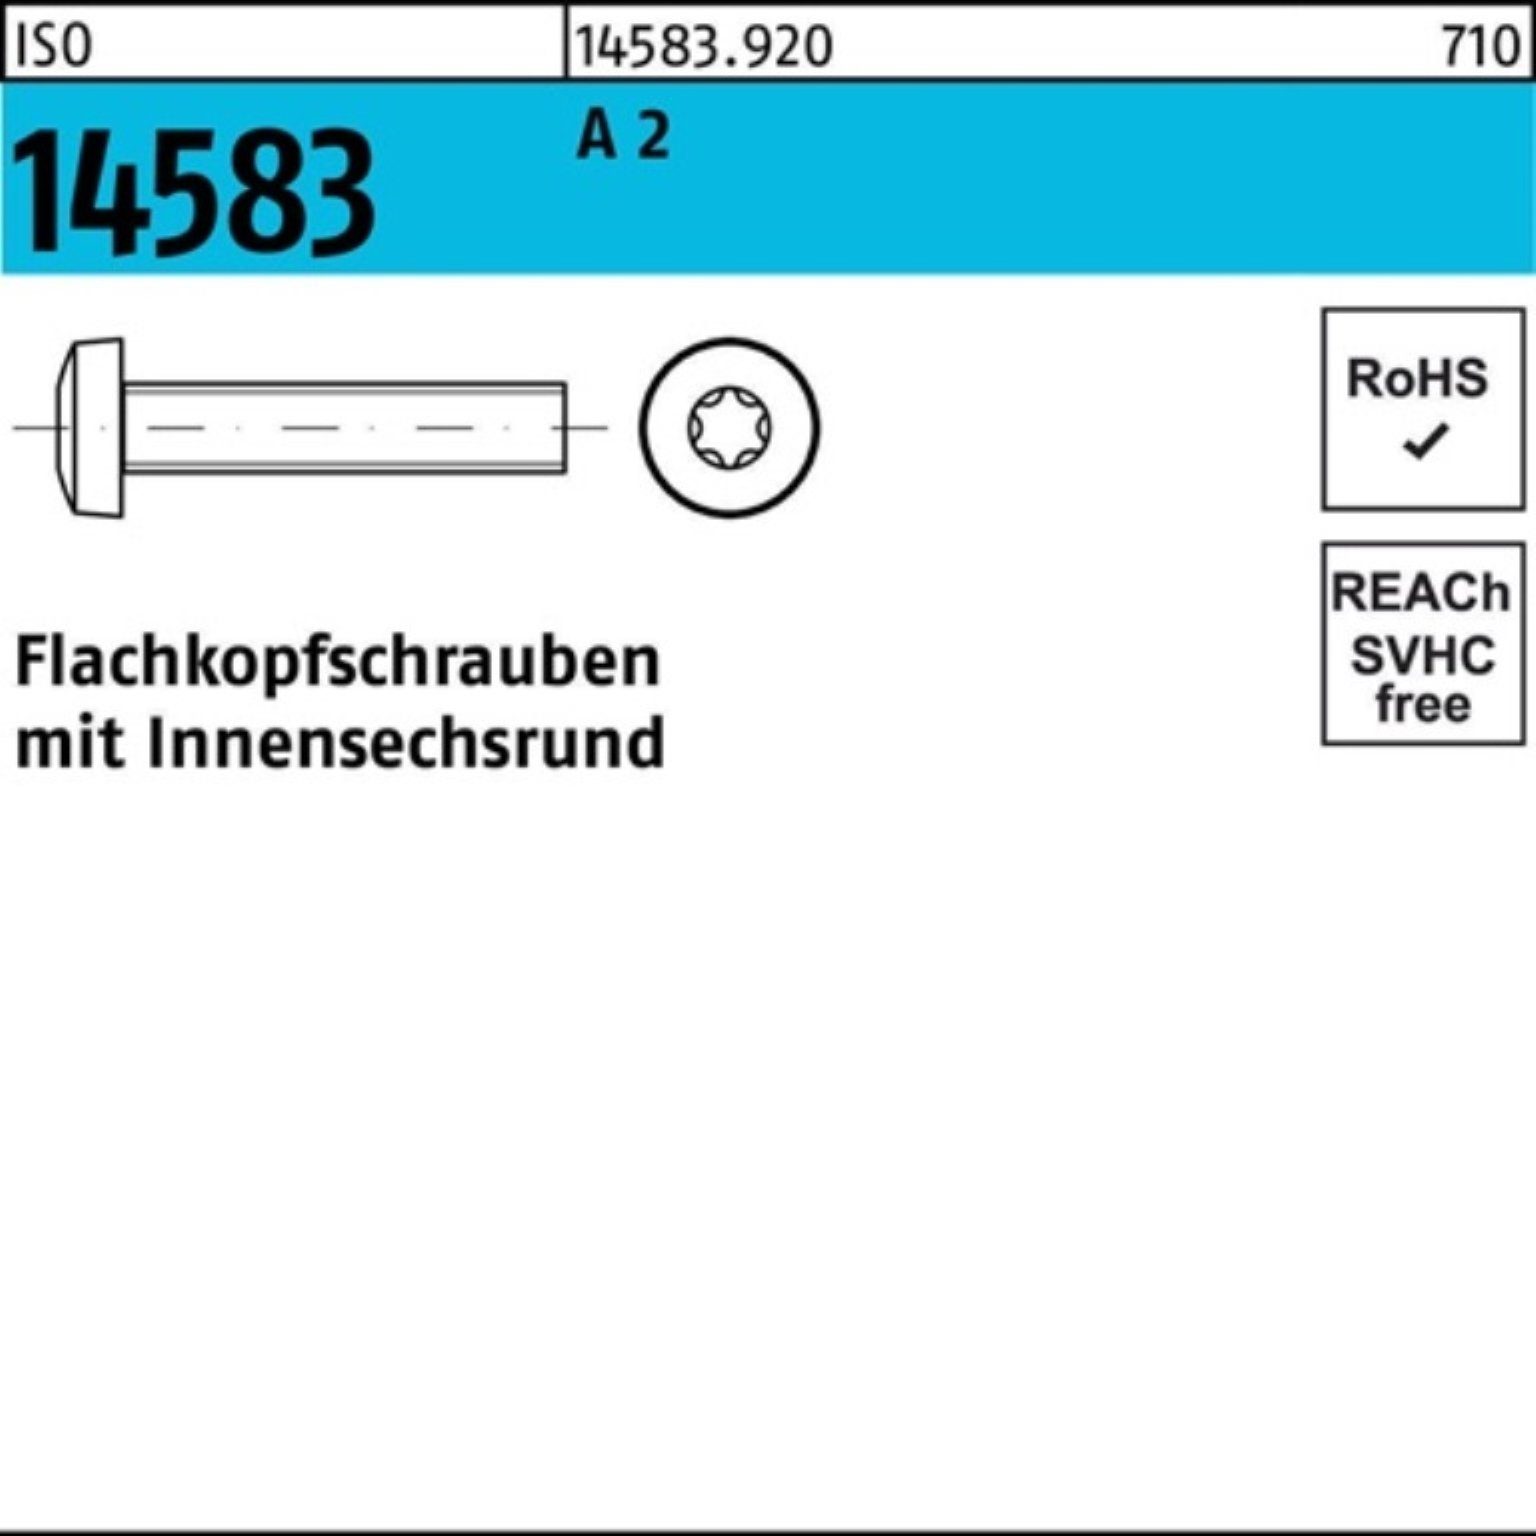 2 ISR 1 Pack 200 Reyher 200er M6x 50 Flachkopfschraube 14583 ISO ISO A Schraube Stück